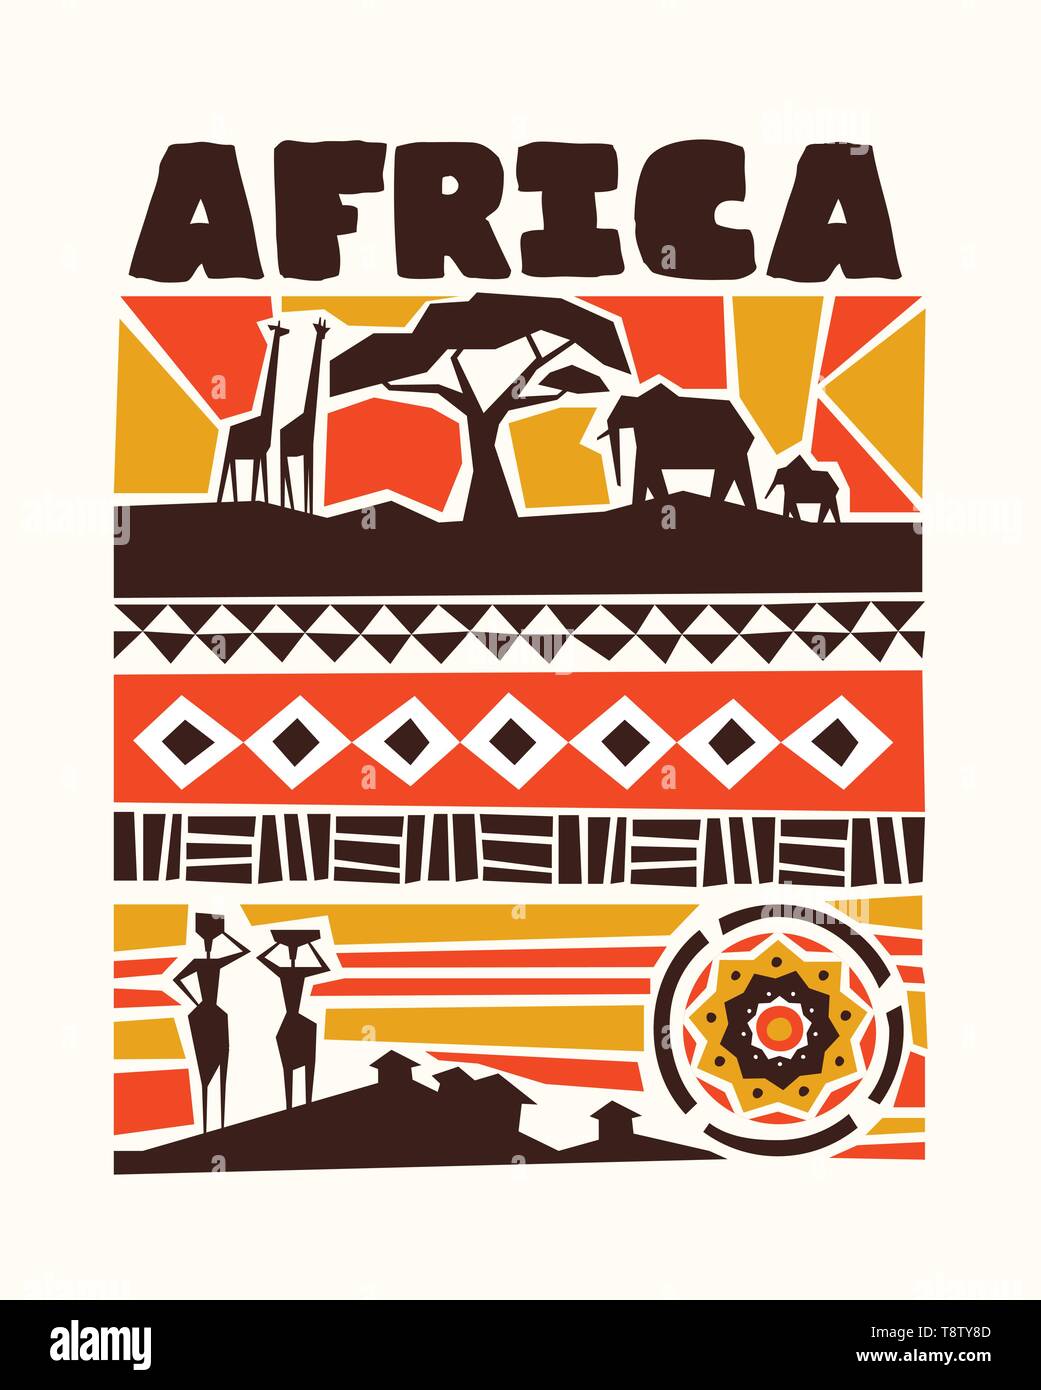 Afrika Konzept Abbildung mit traditionellen afrikanischen Stil Kunst Dekoration. Umfasst Wild Safari Tiere, Stamm Frauen und ethnischen Formen. Stock Vektor